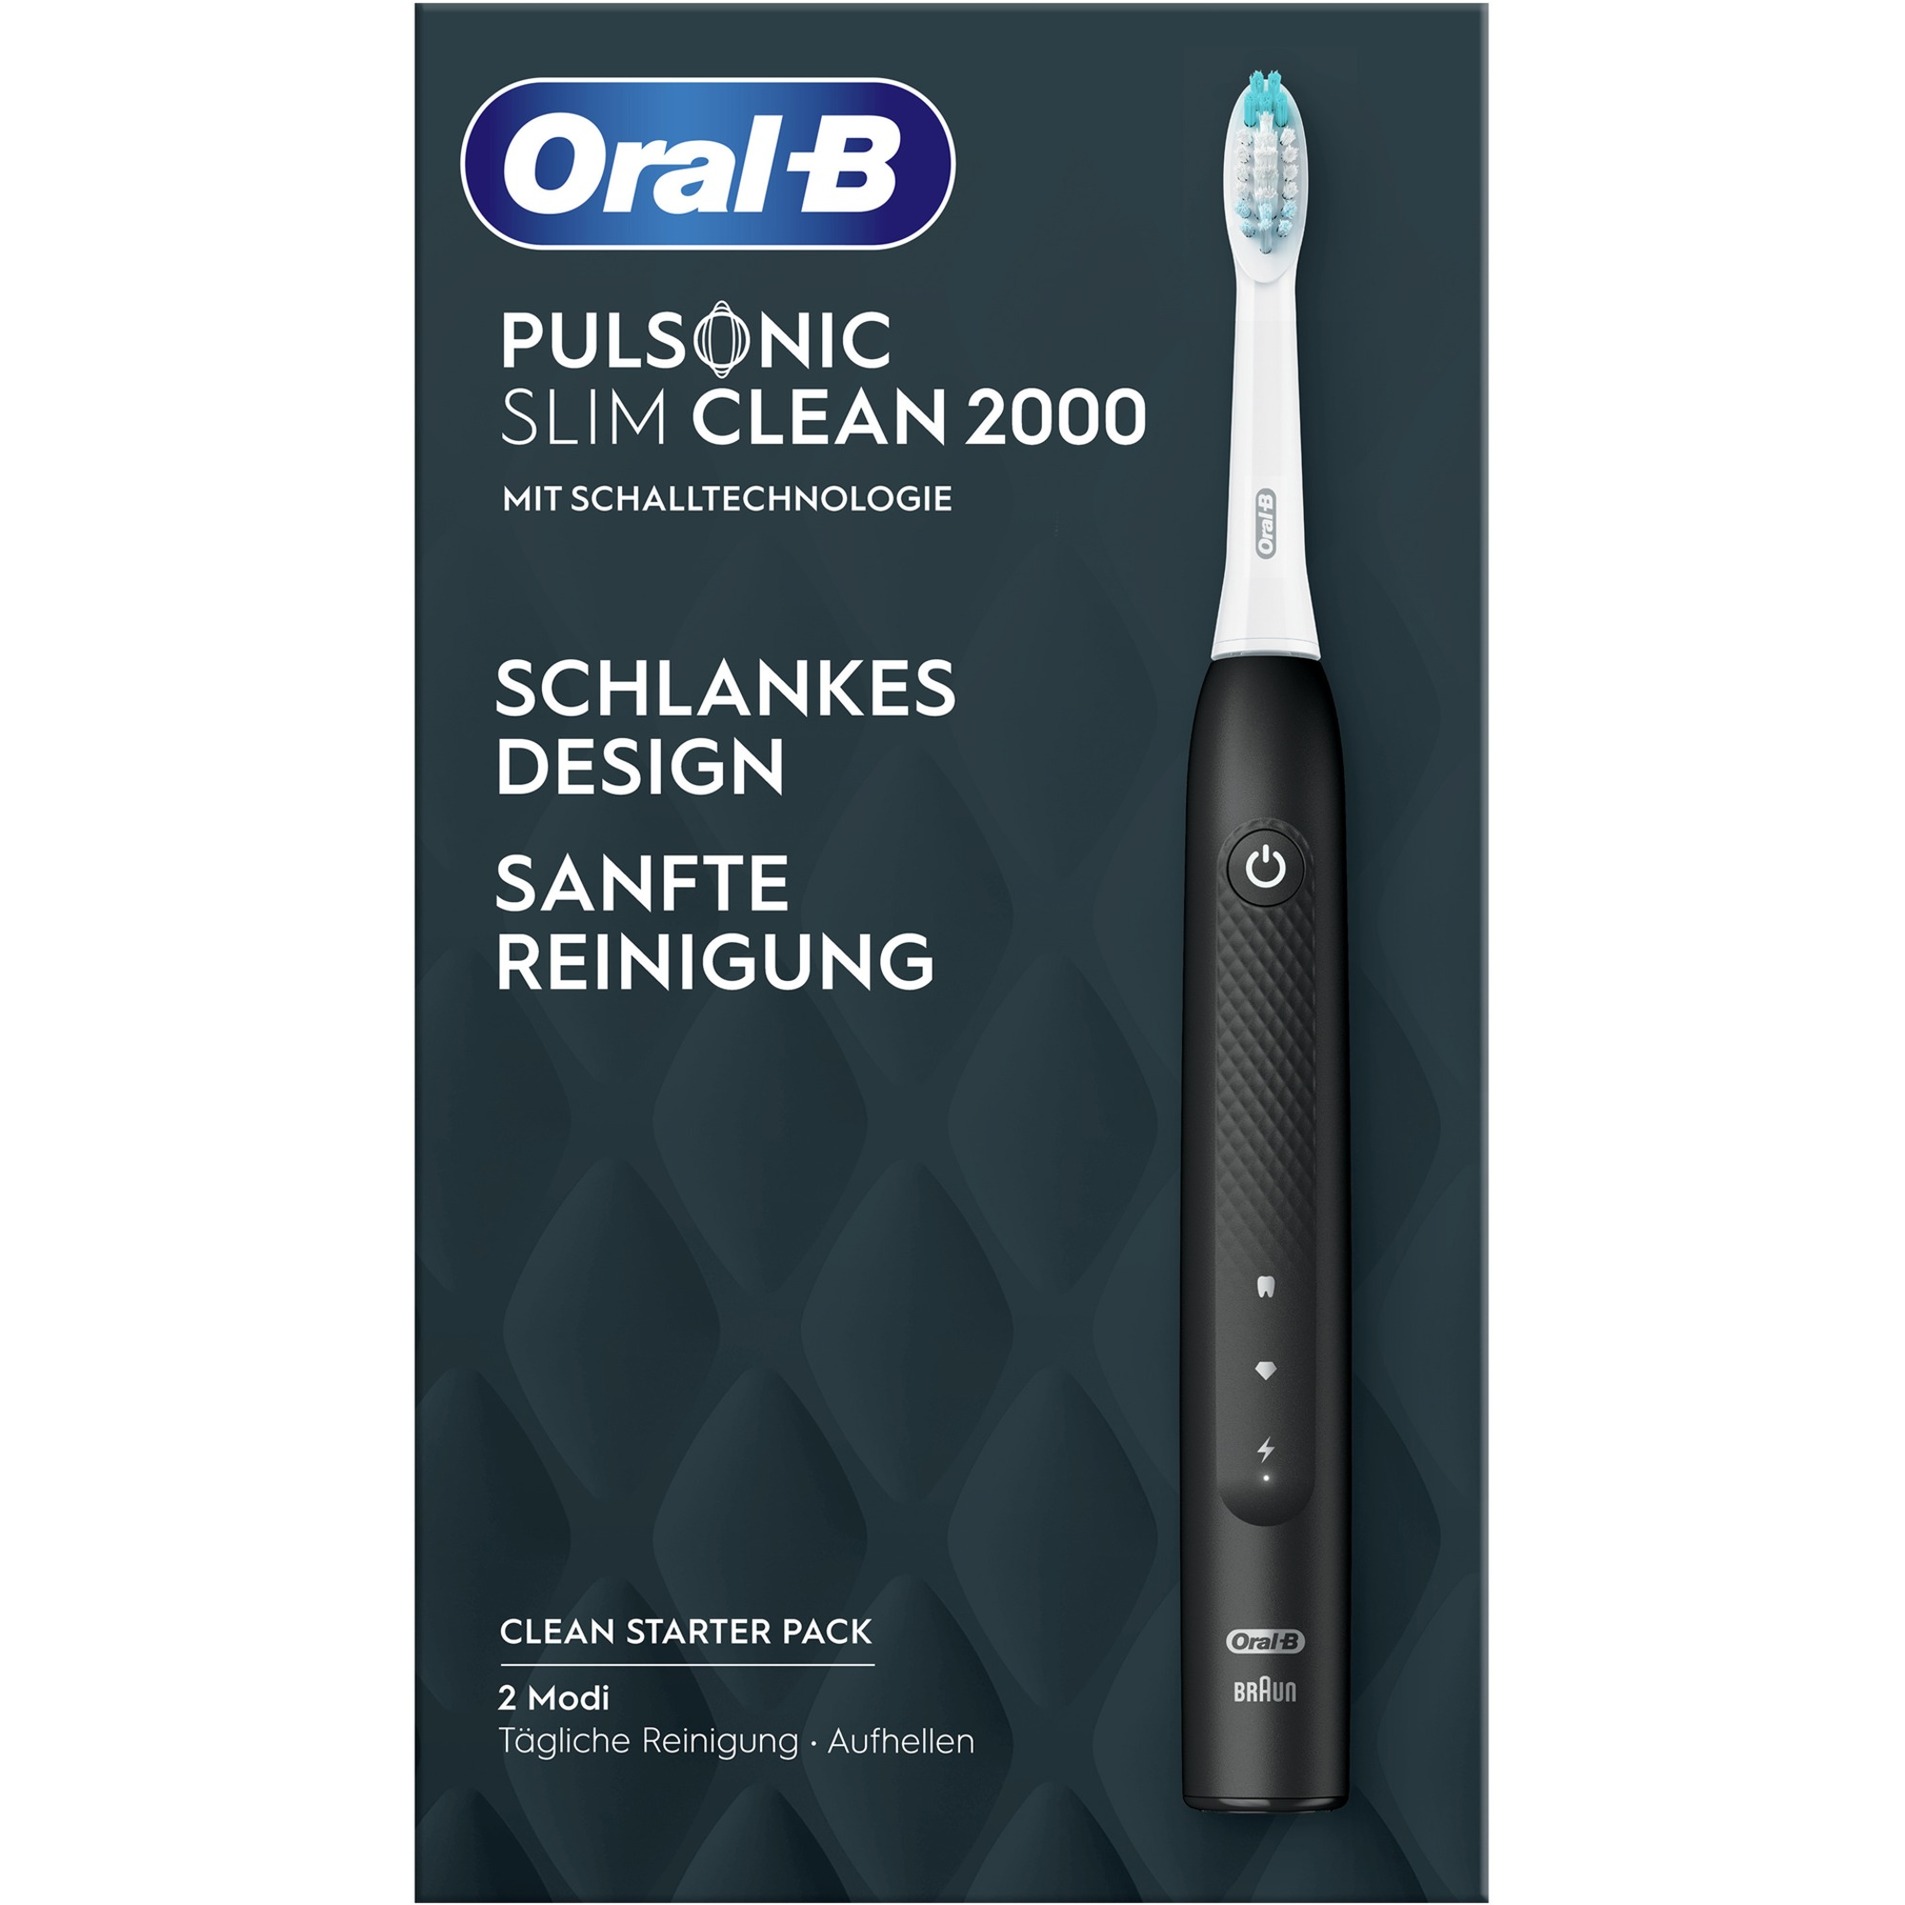 Image of Alternate - Oral-B Pulsonic Slim Clean 2000, Elektrische Zahnbürste online einkaufen bei Alternate